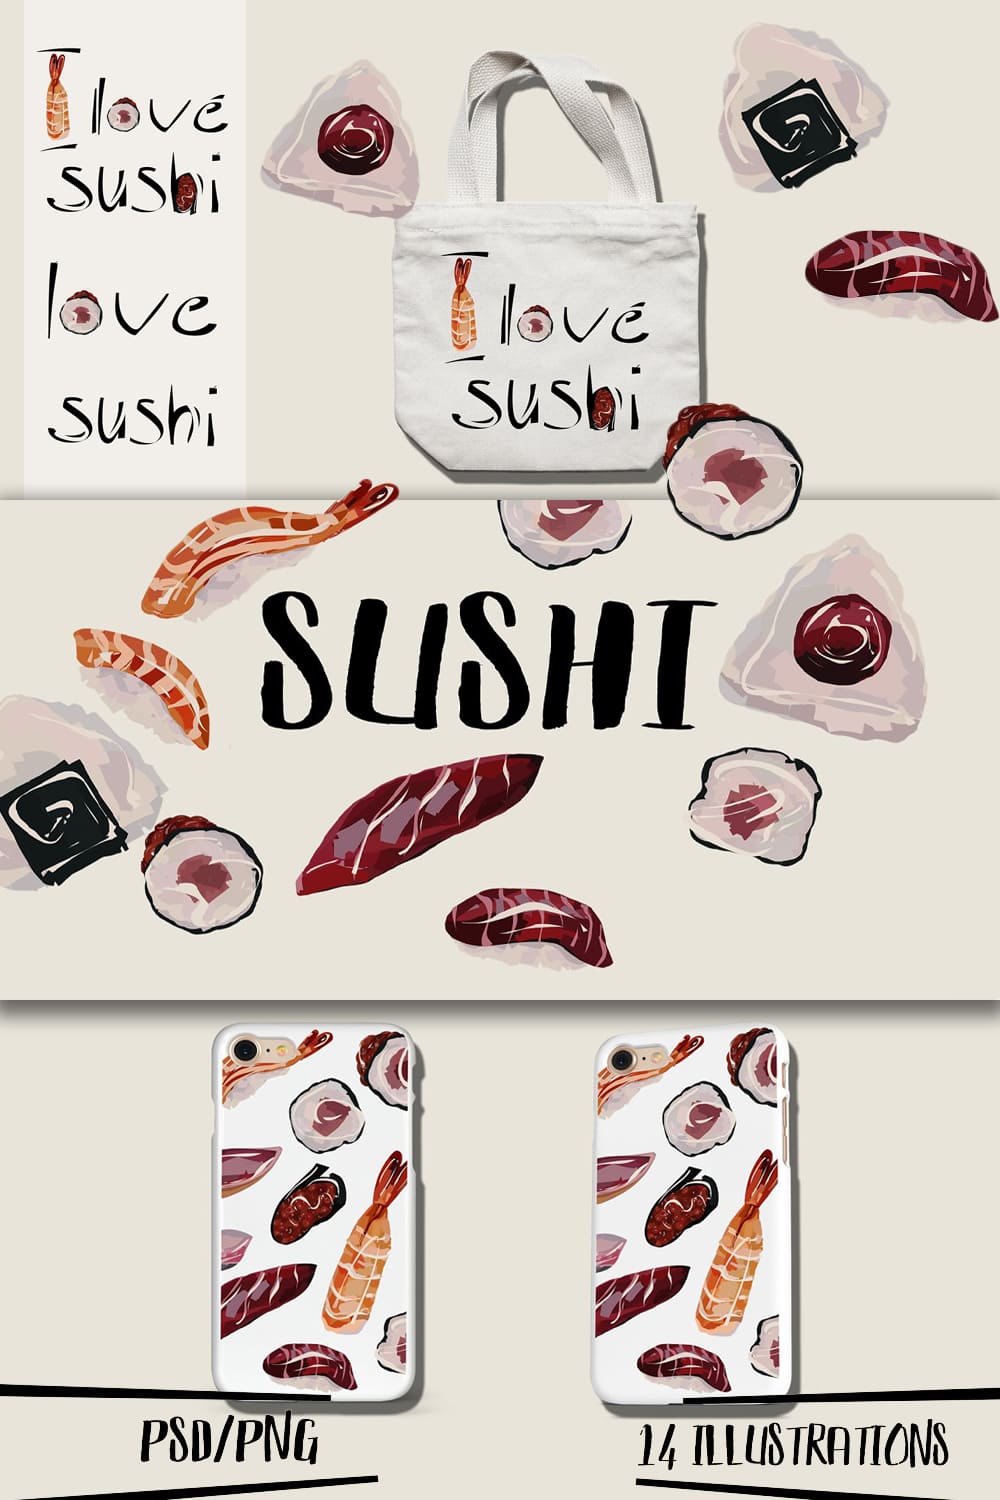 Sushi Illustrations Kit pinterest image.